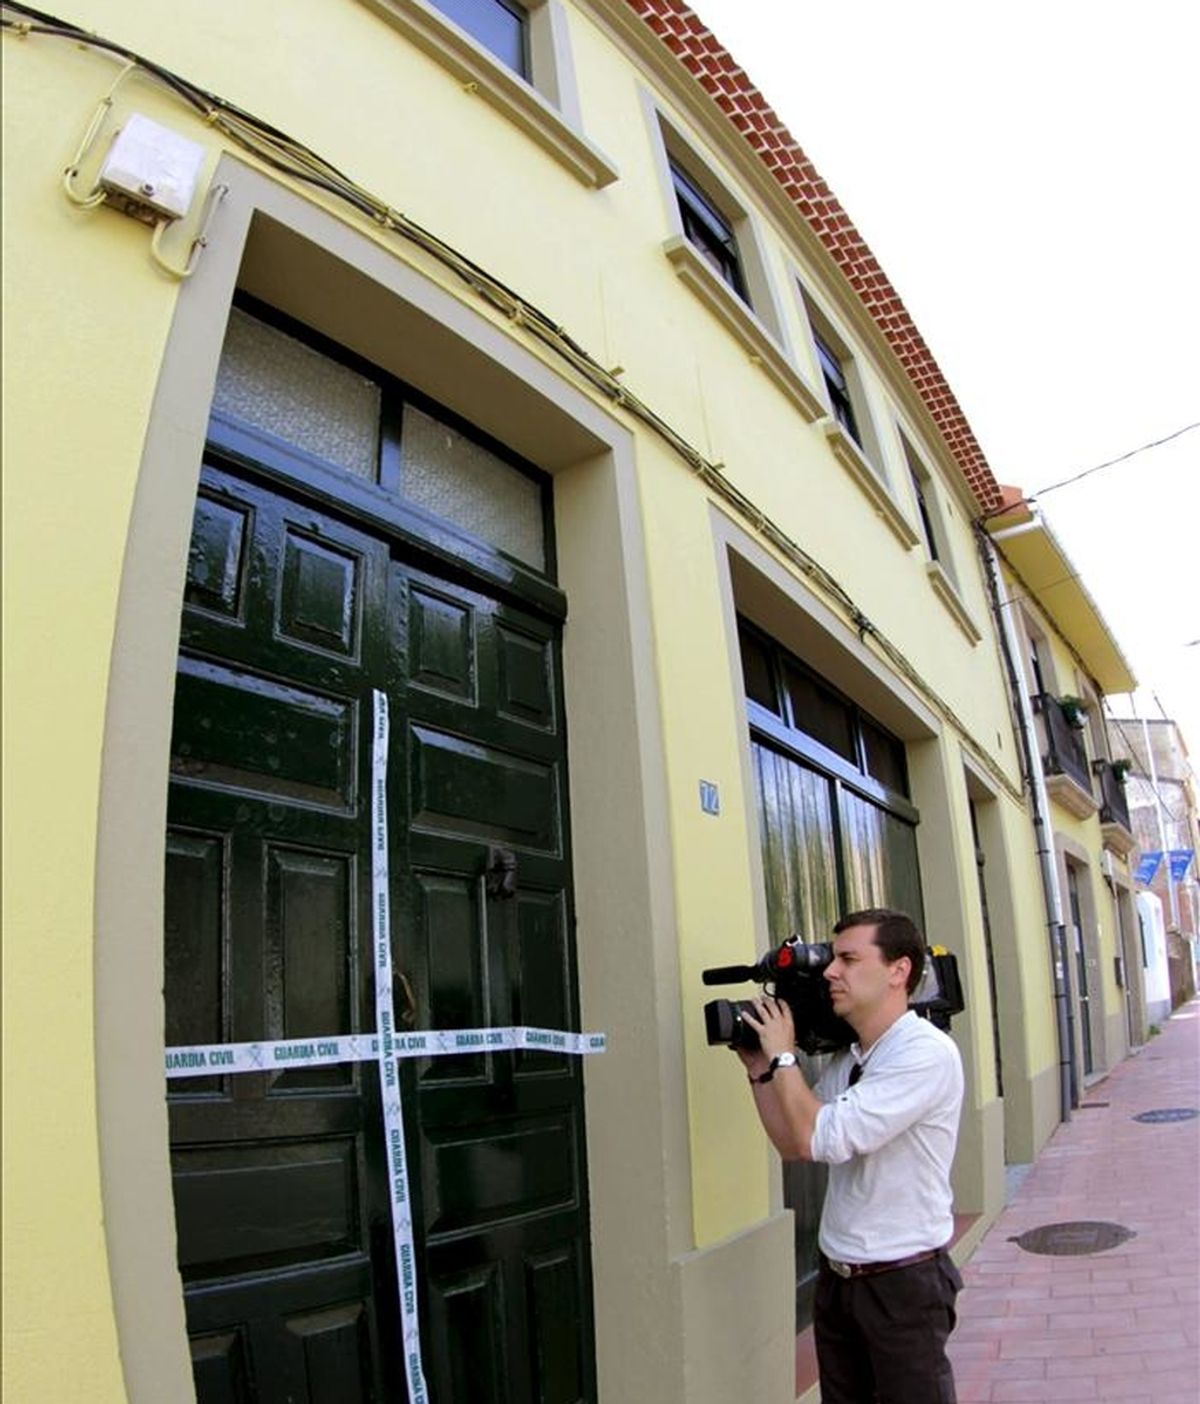 Un reportero toma imágenes de la puerta precintada de la vivienda de la población coruñesa de Noia donde una joven de 19 años apareció ayer muerta, brutalmente acuchillada. EFE